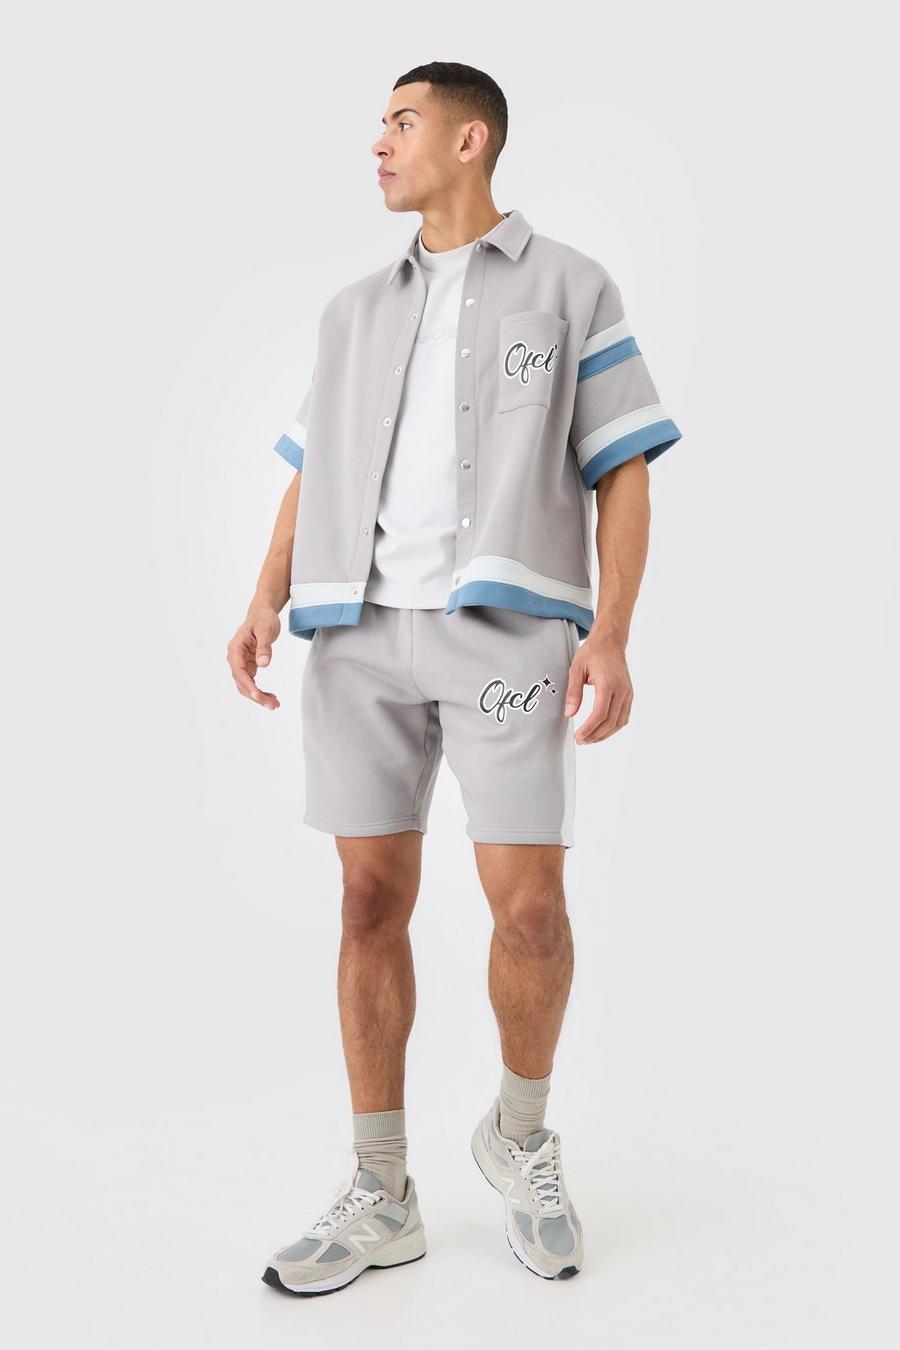 Ofcl Baseball Shirt And Shorts Set, Grey